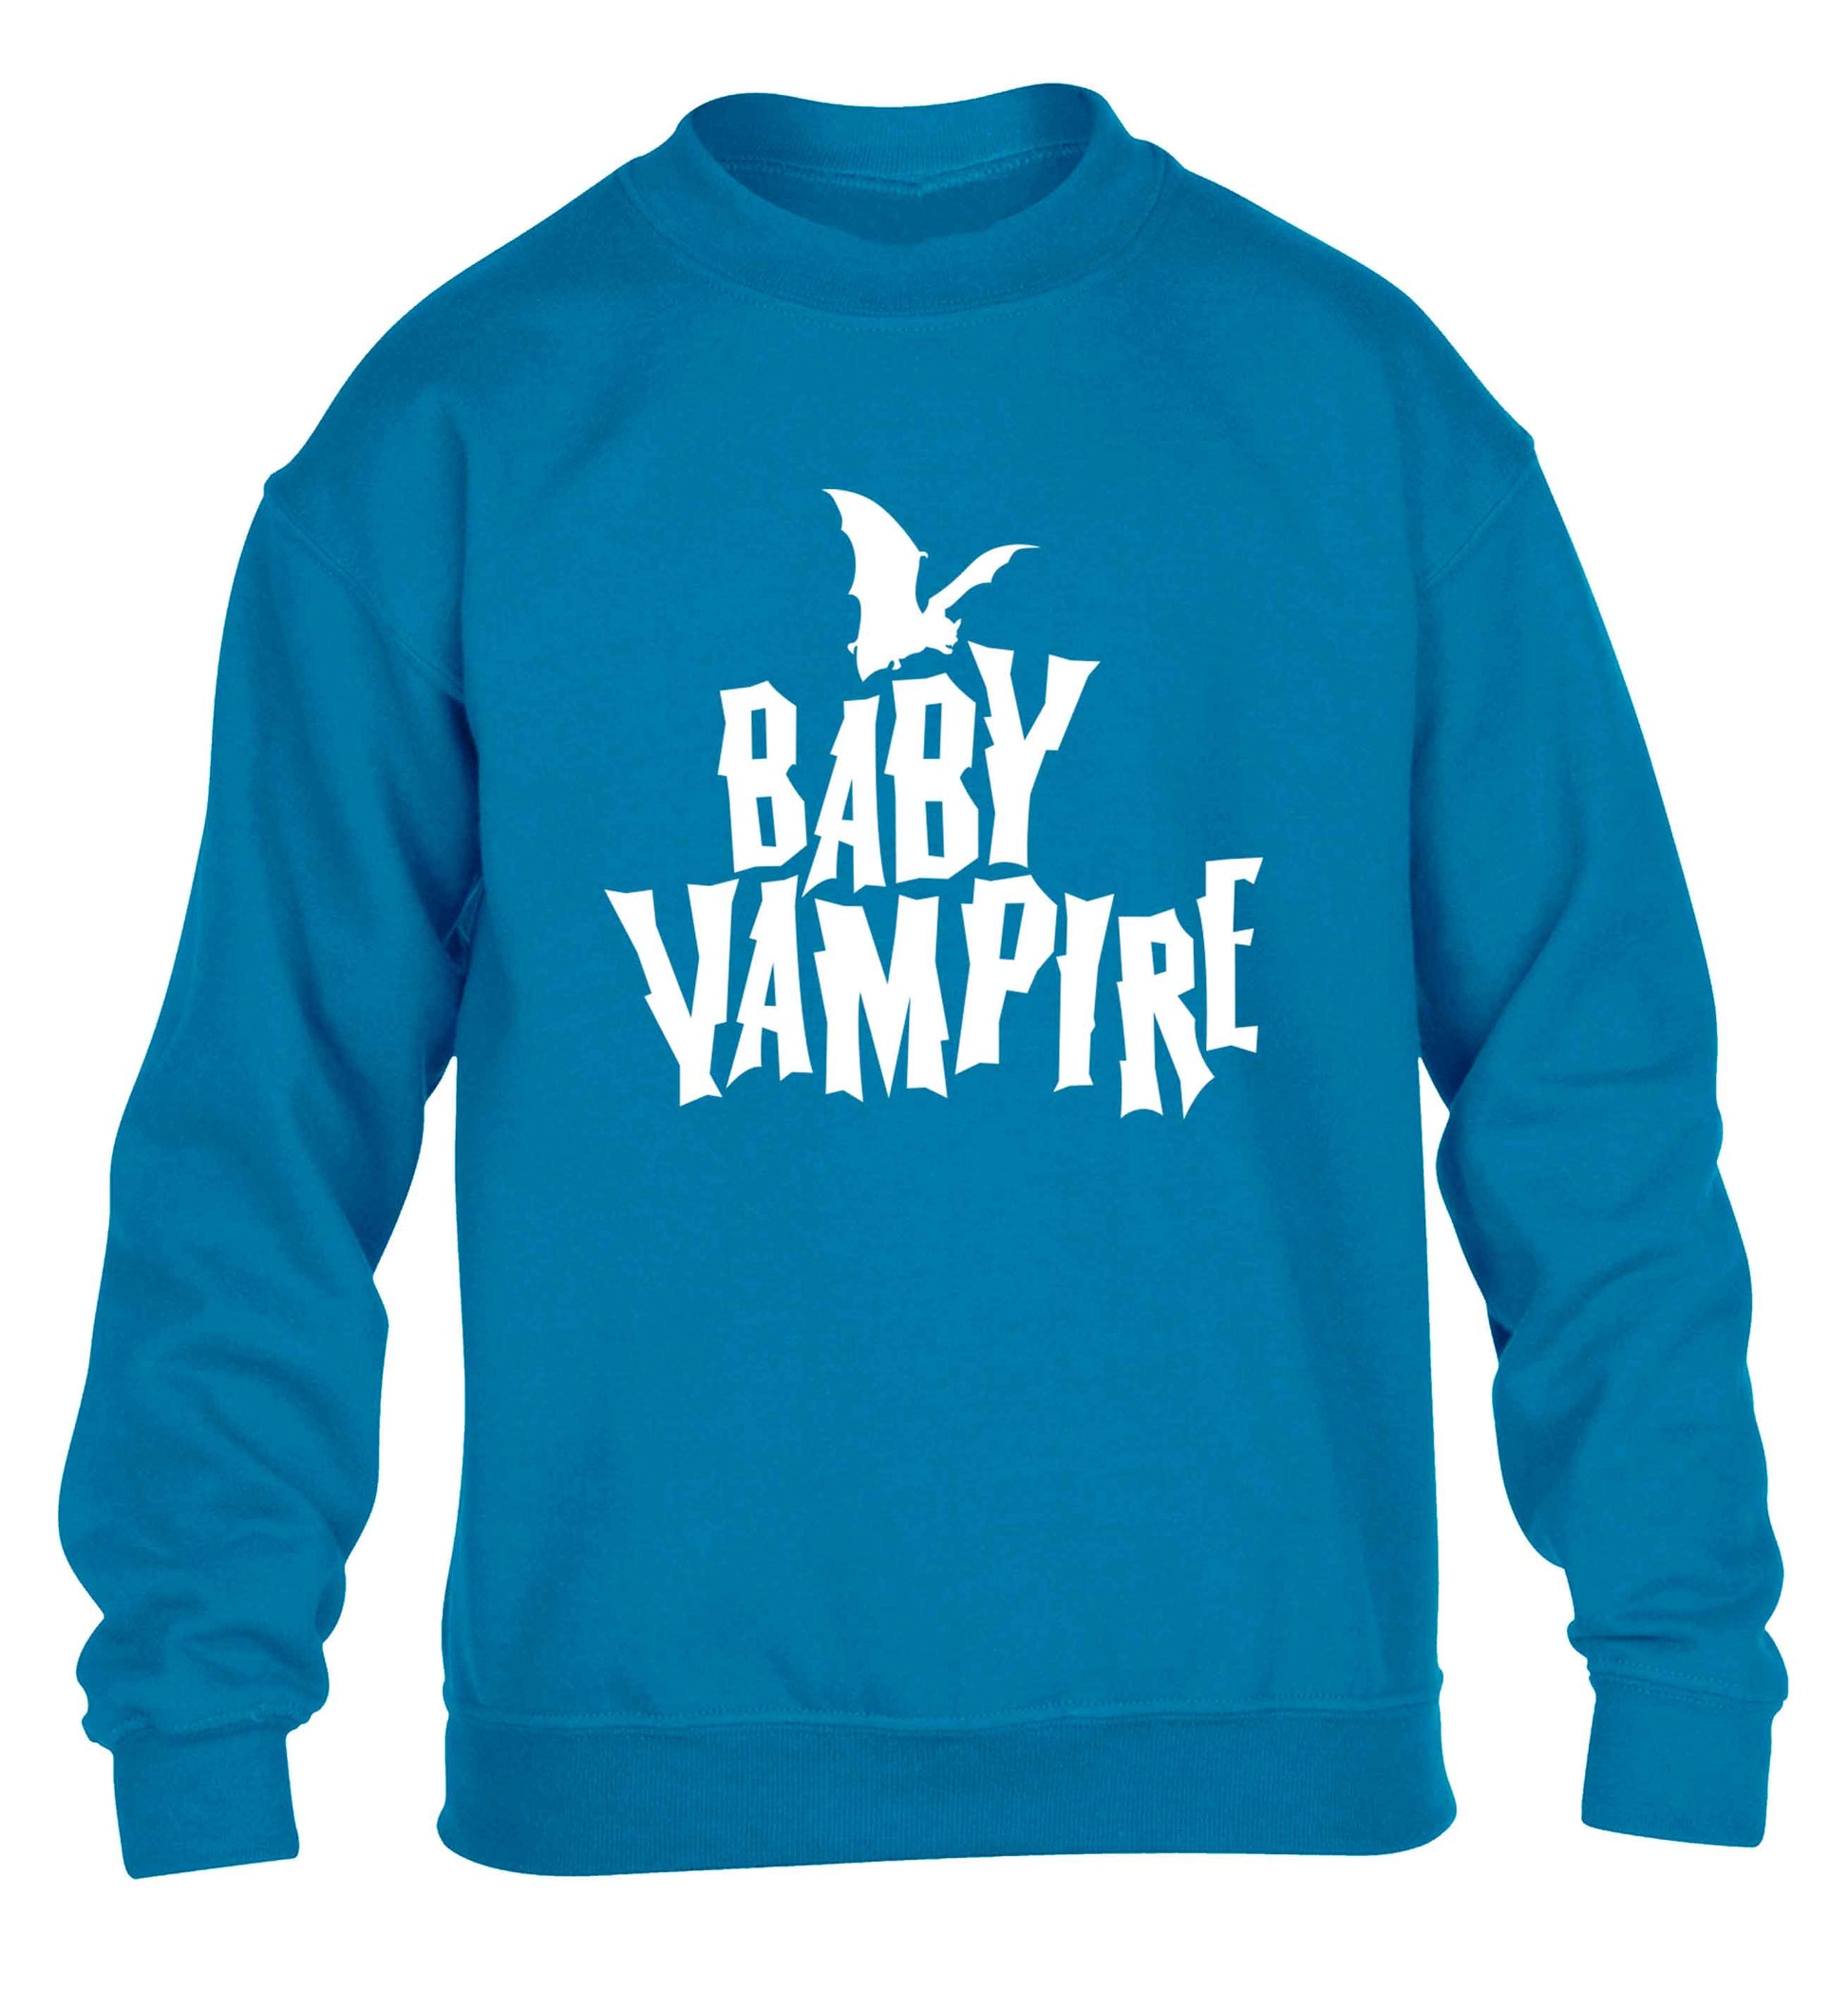 Baby vampire children's blue sweater 12-13 Years